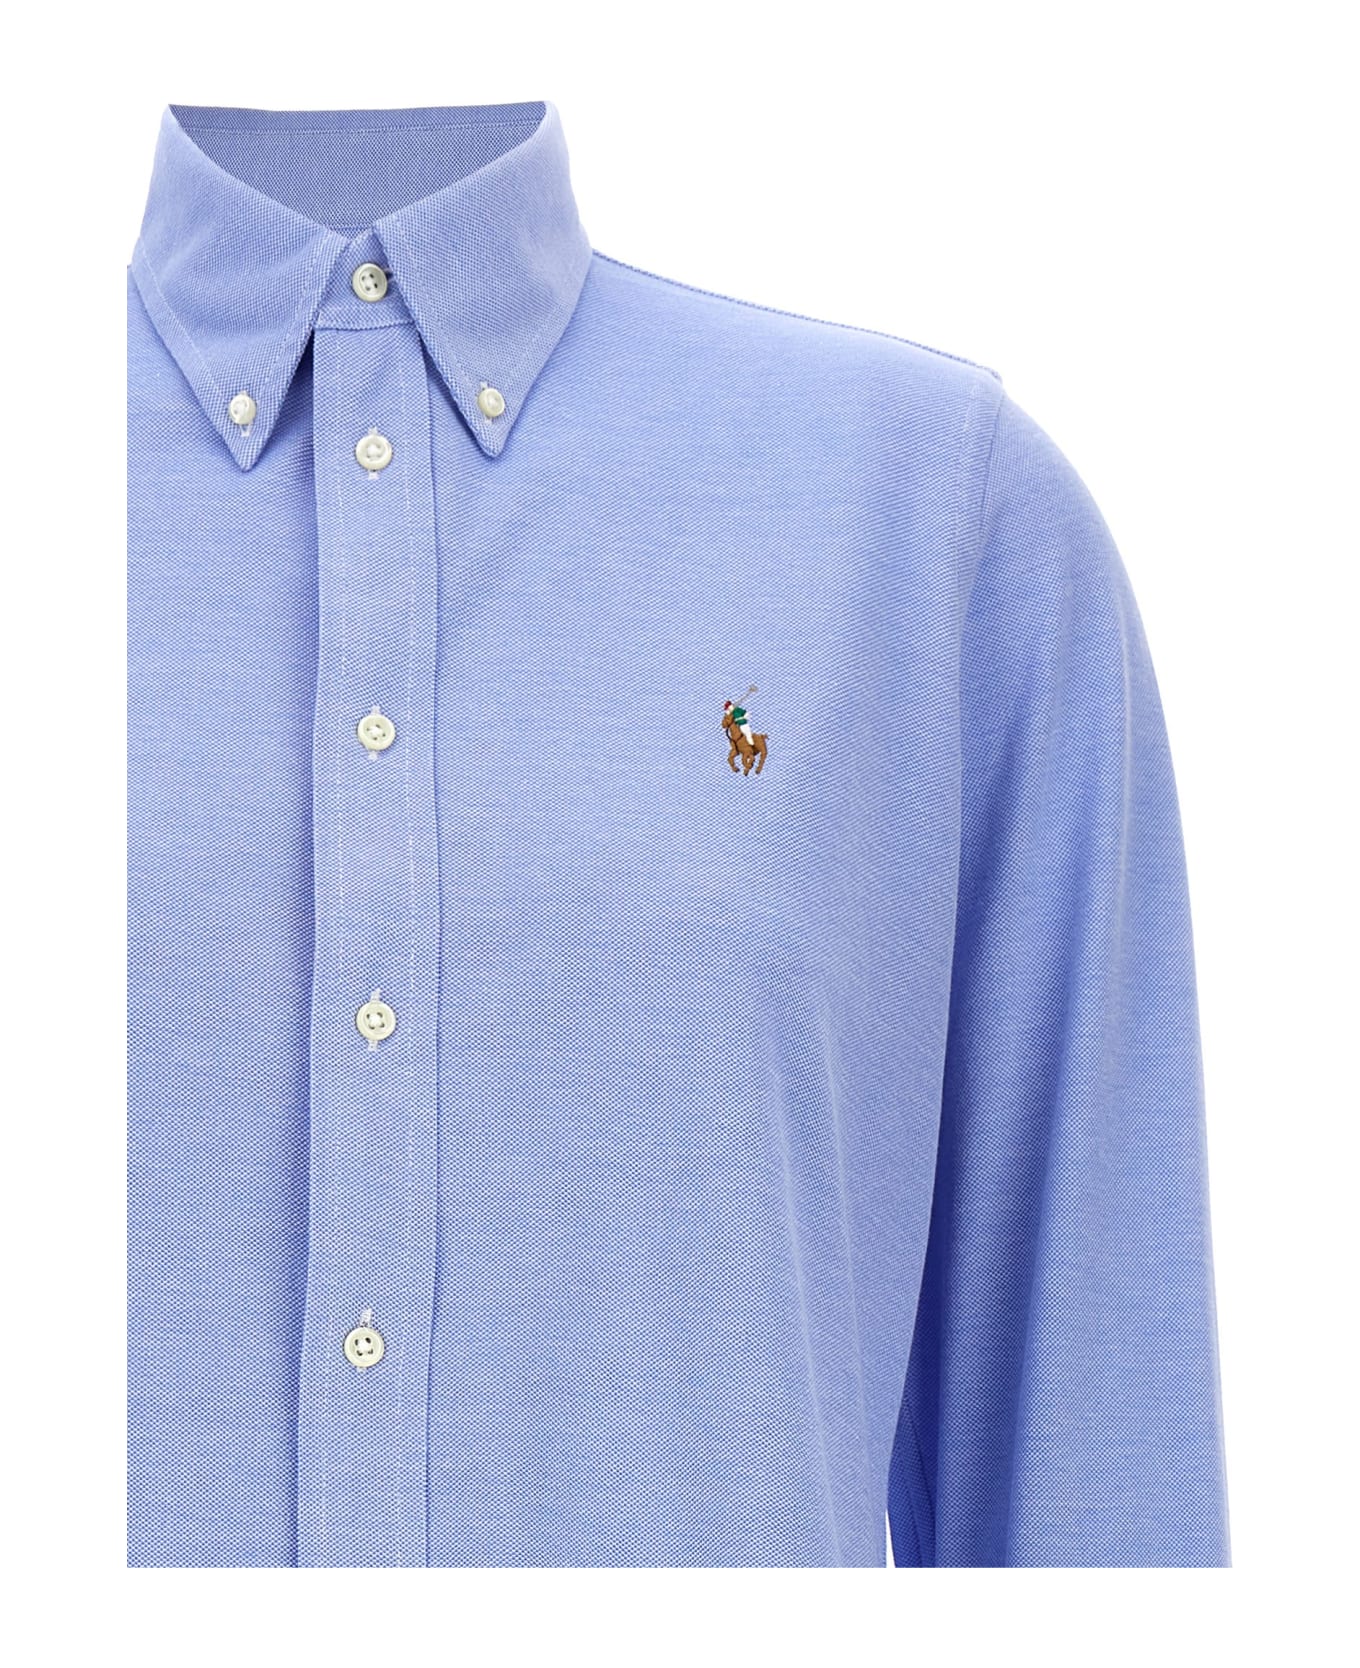 Ralph Lauren 'heidi' Shirt - Light Blue シャツ